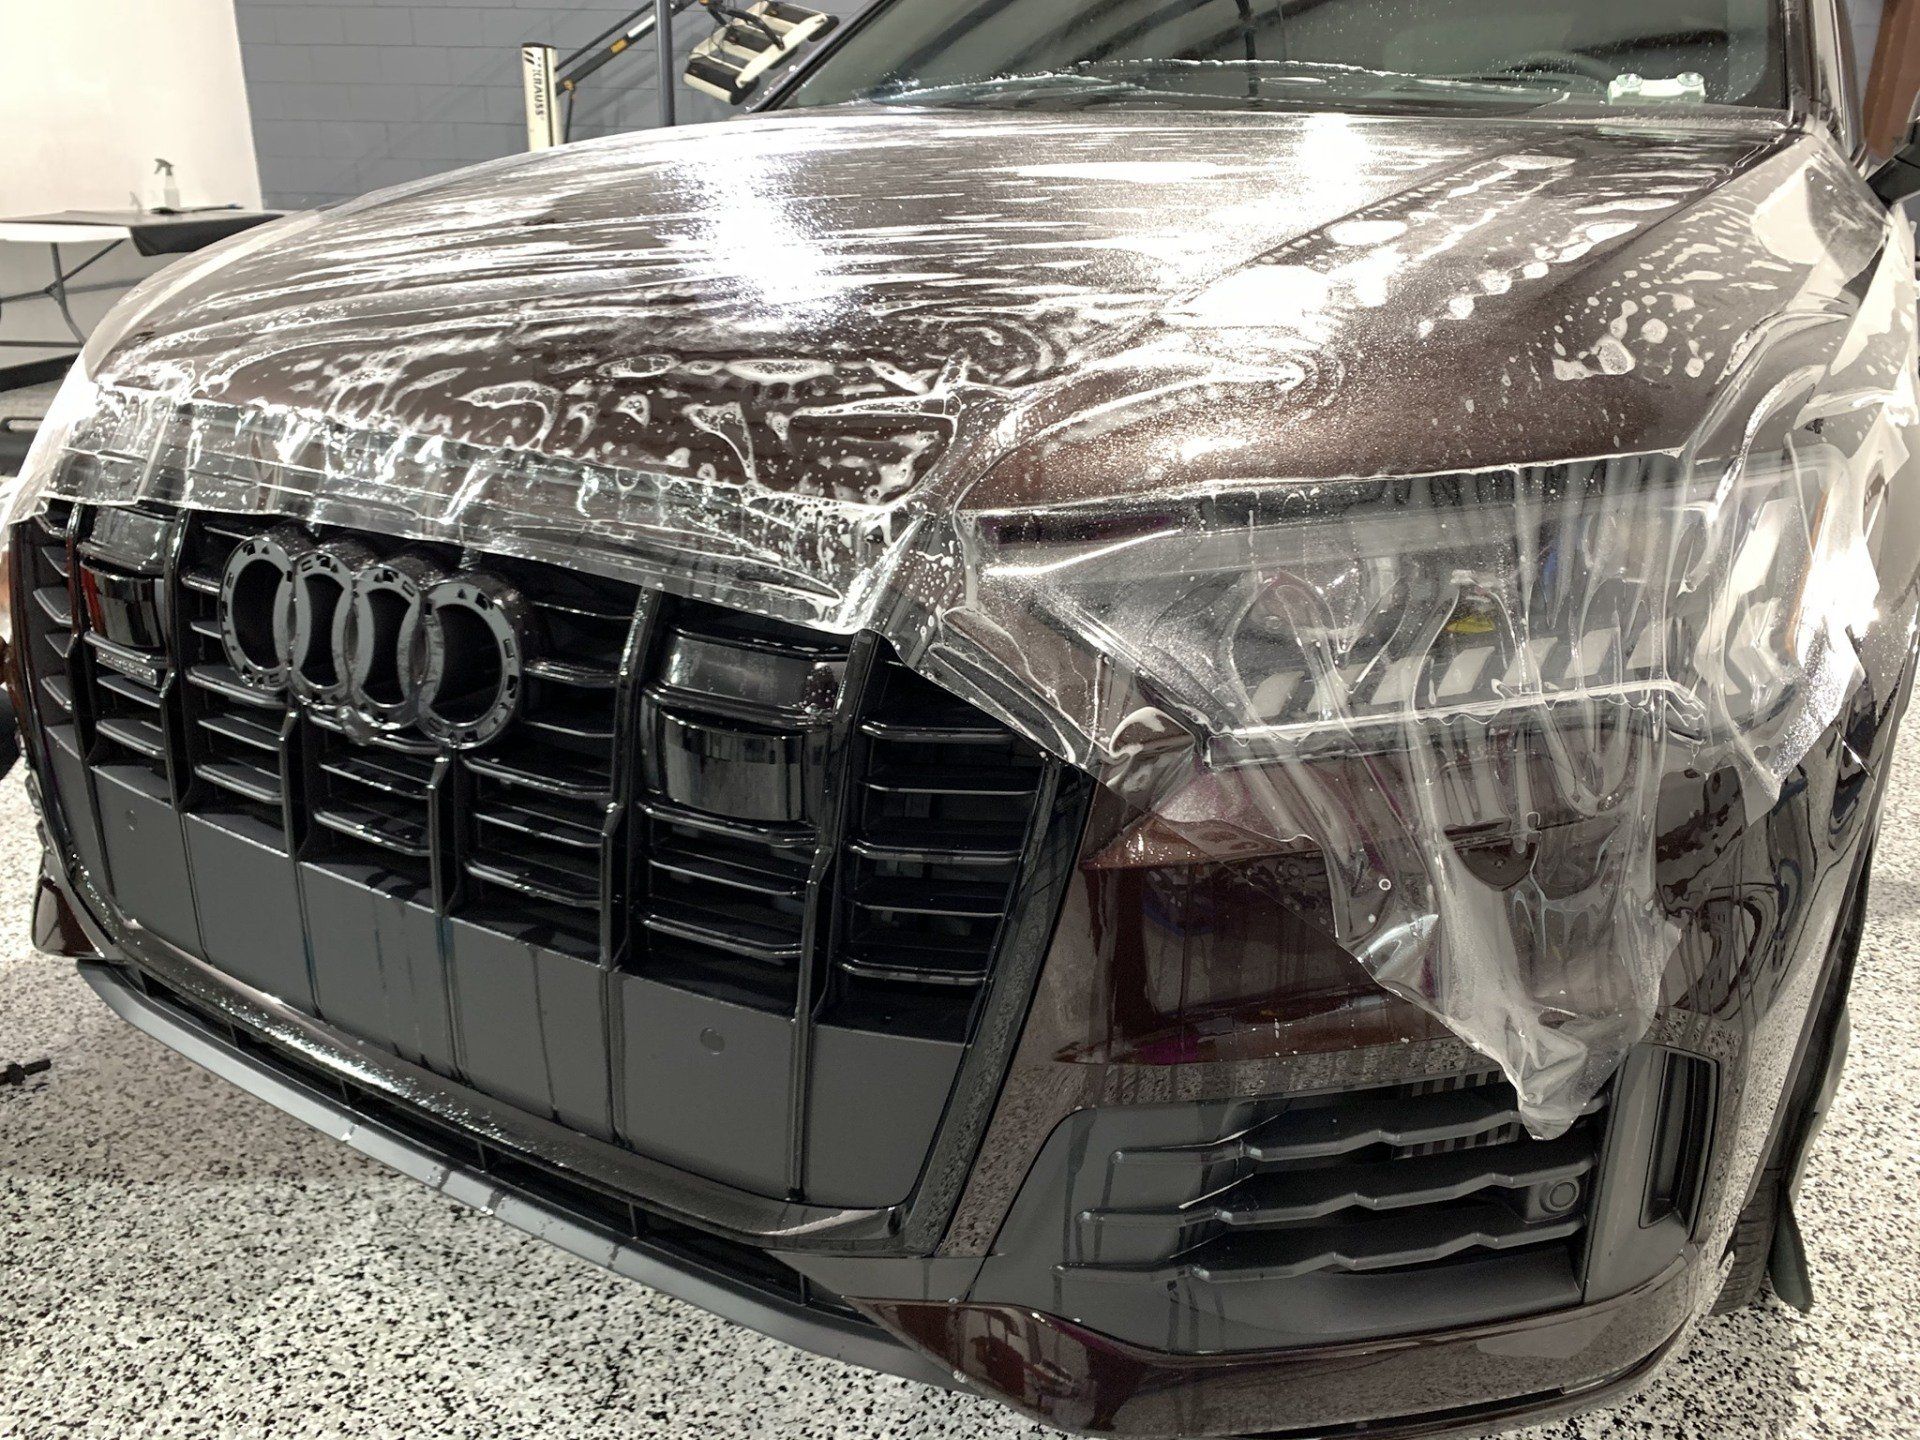 Paint Protection Film Audi Q7 Orlando